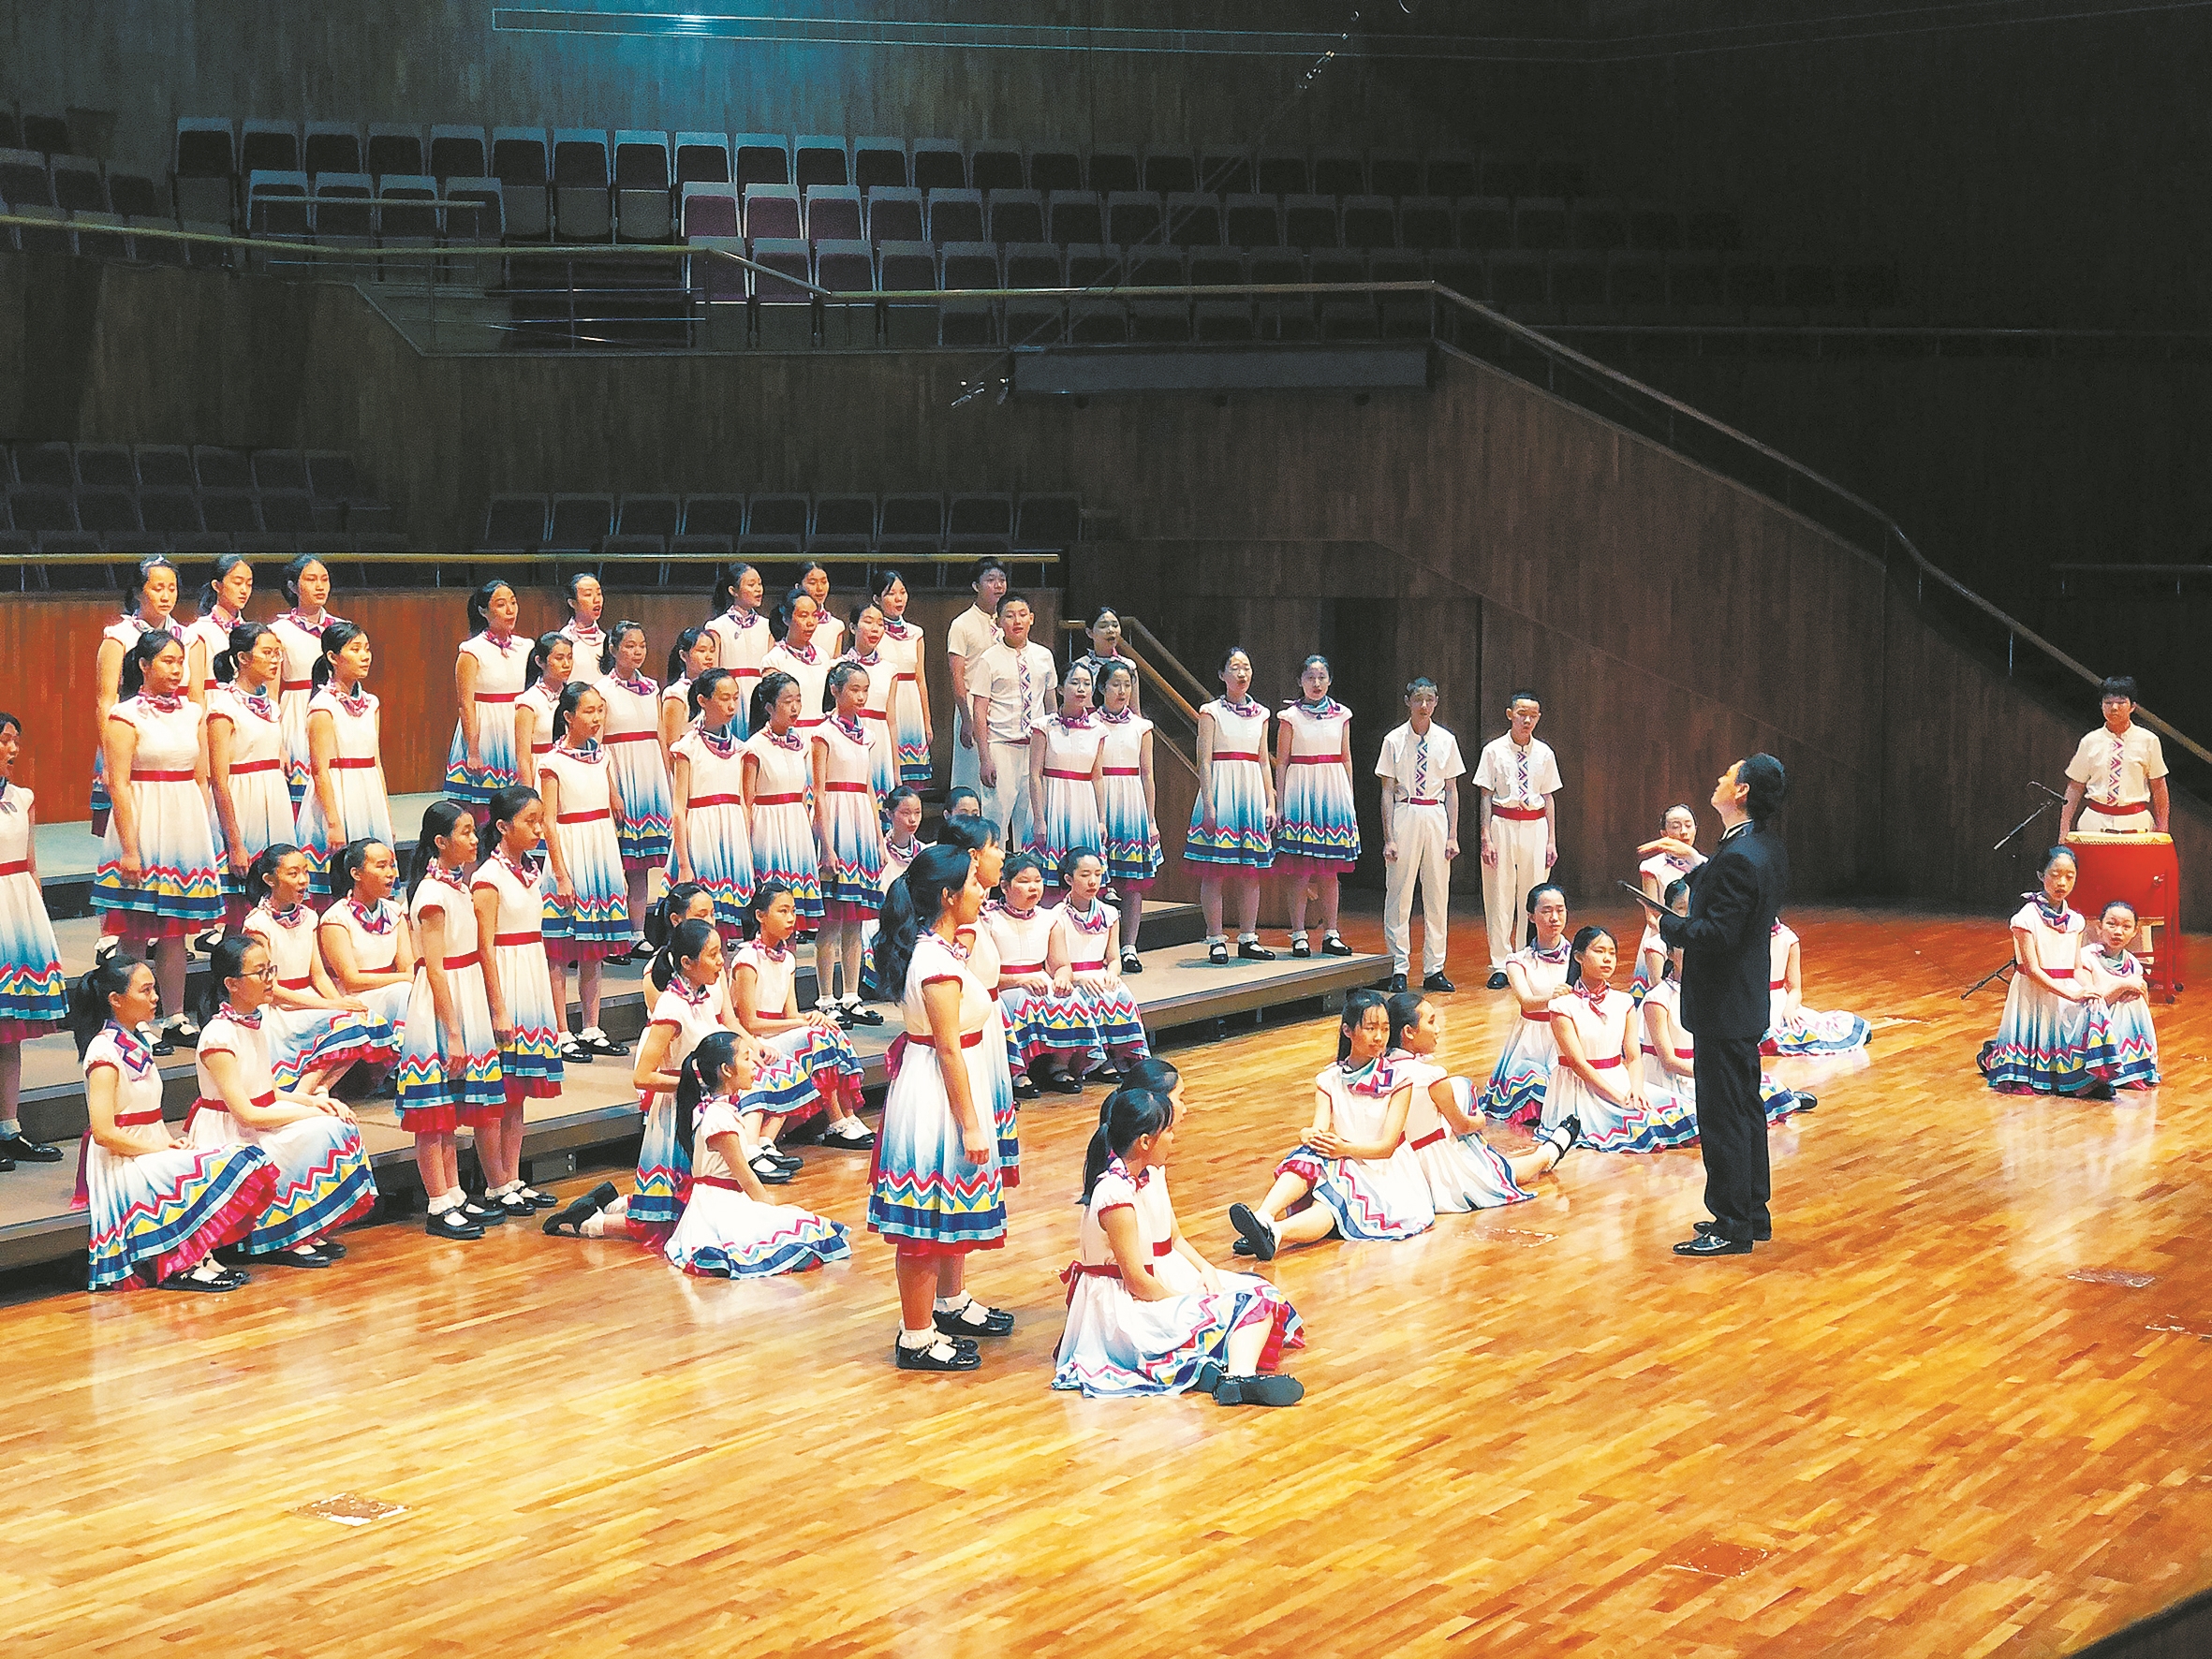 广州市海珠区少年宫属下的广州小海燕合唱团获童声合唱二组(16岁或